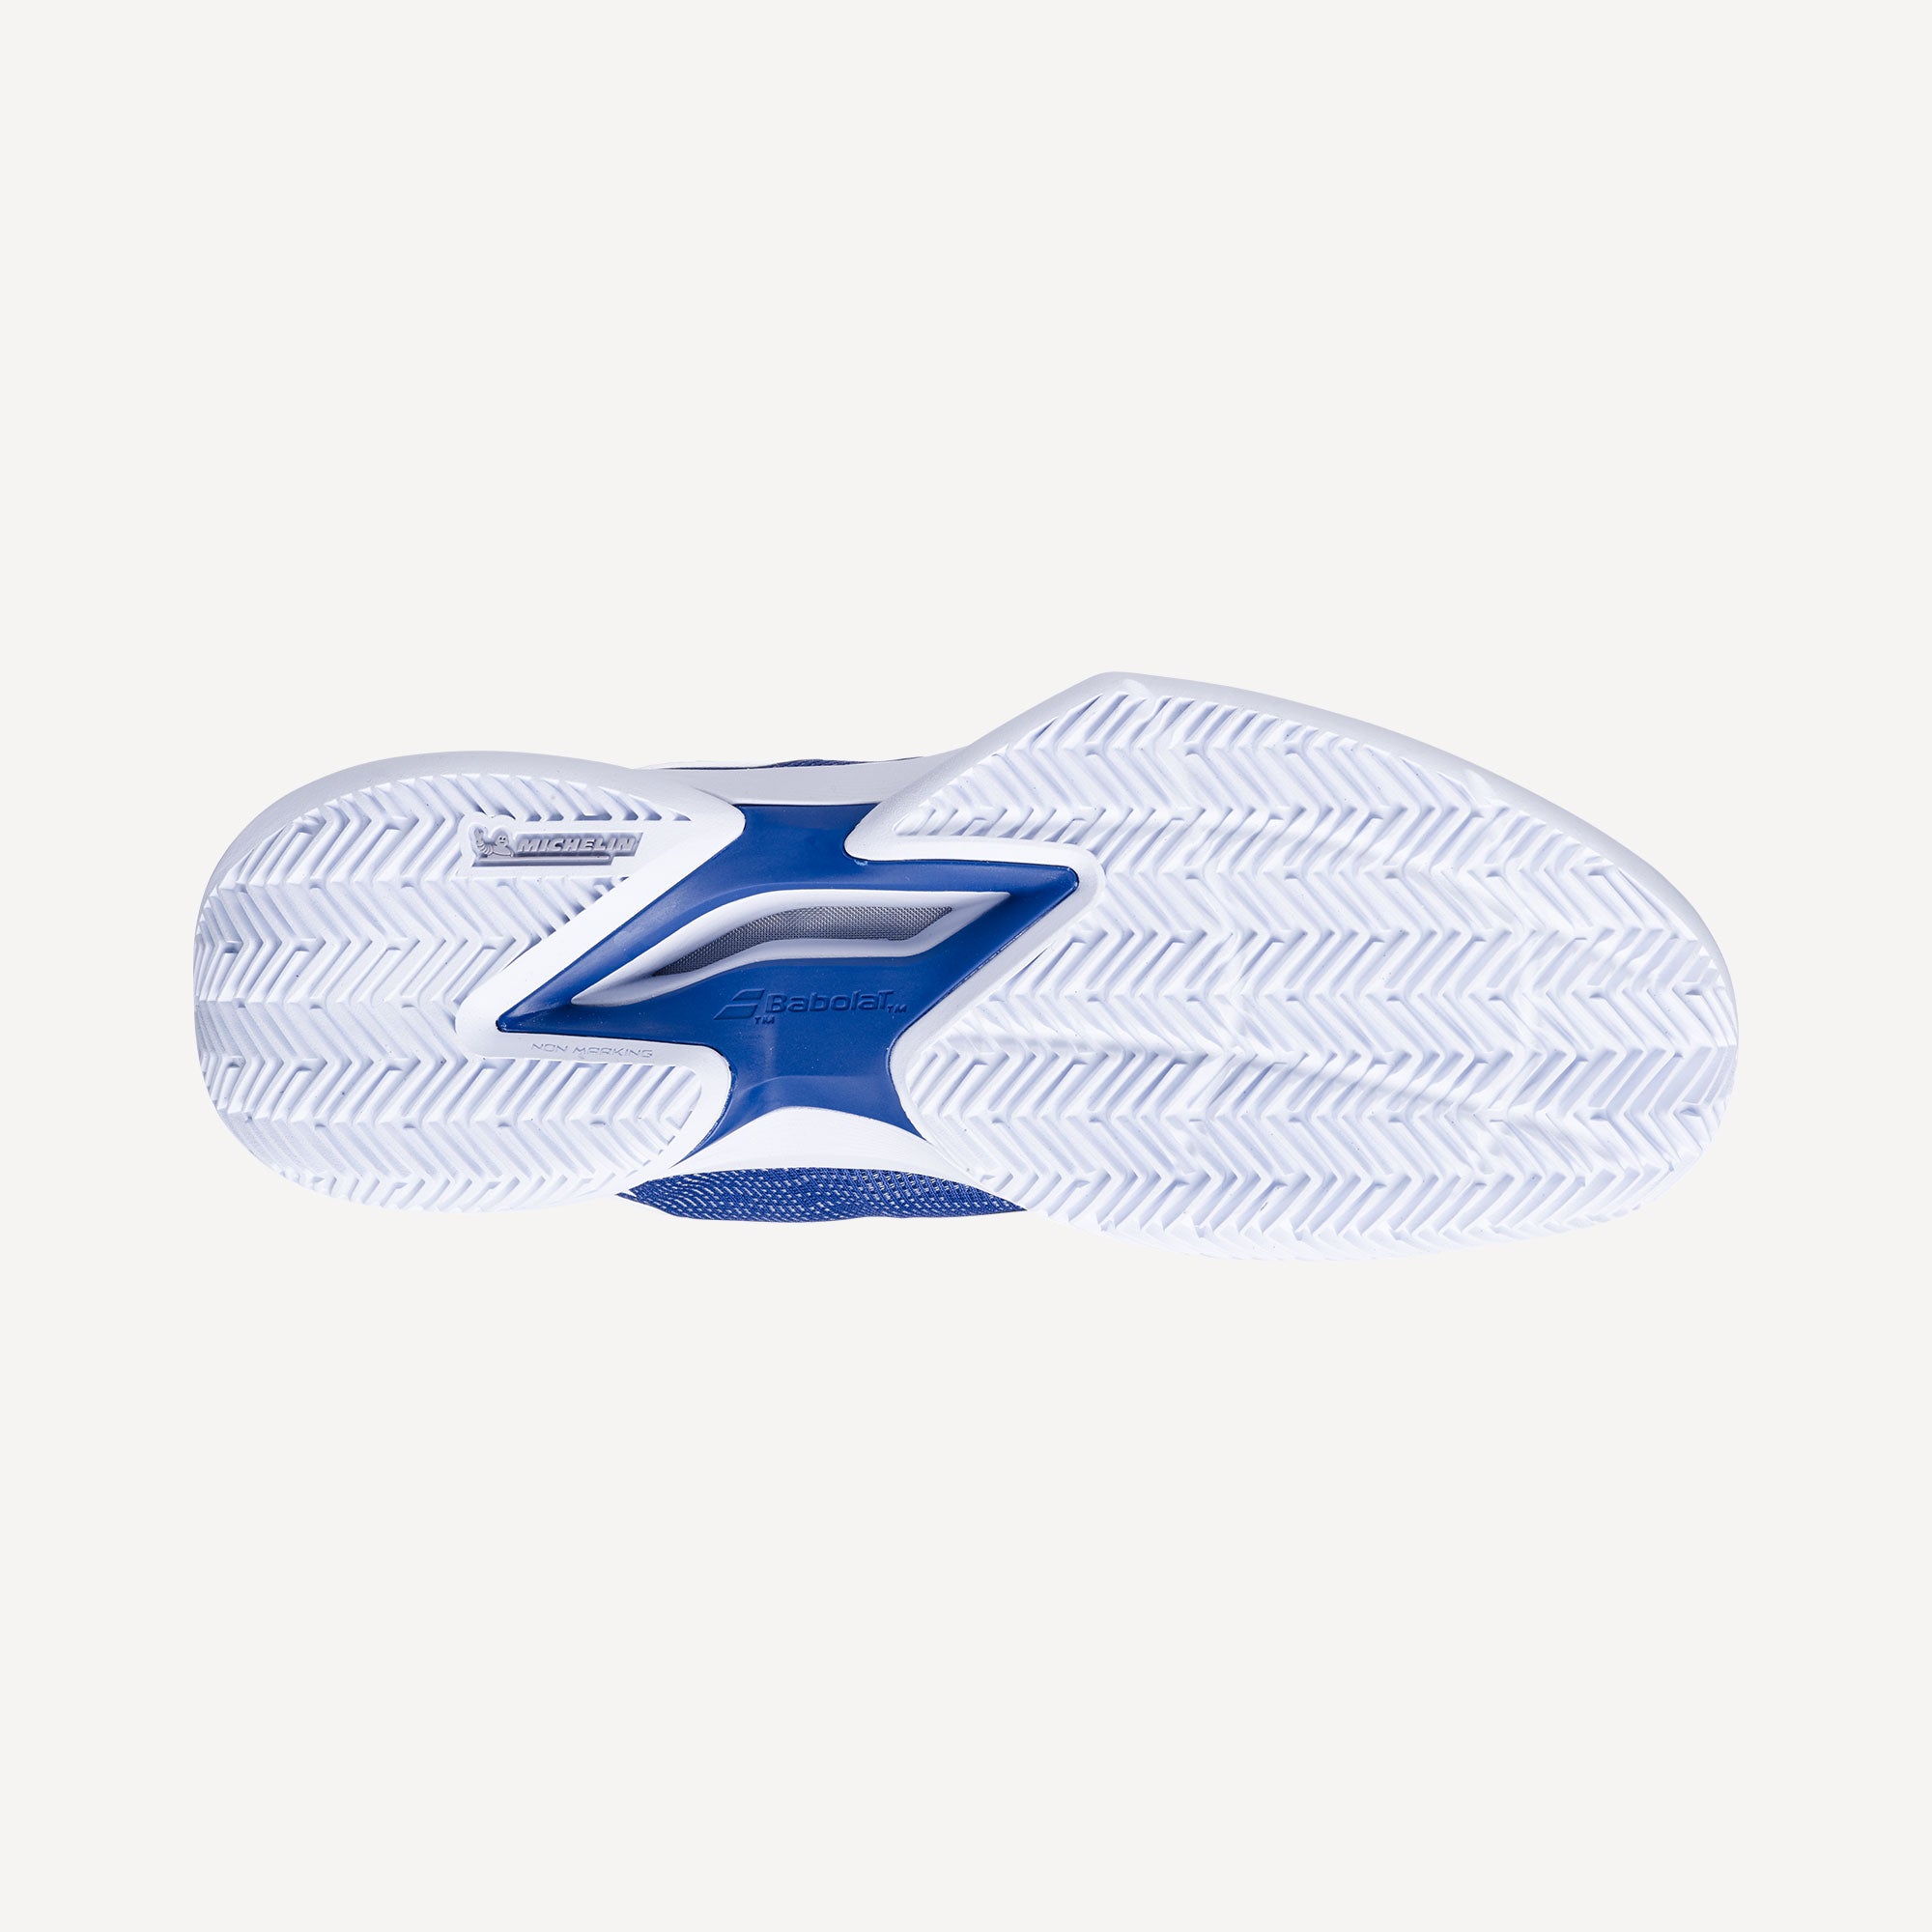 Babolat Jet Tere Men's Clay Court Tennis Shoes - Blue (2)